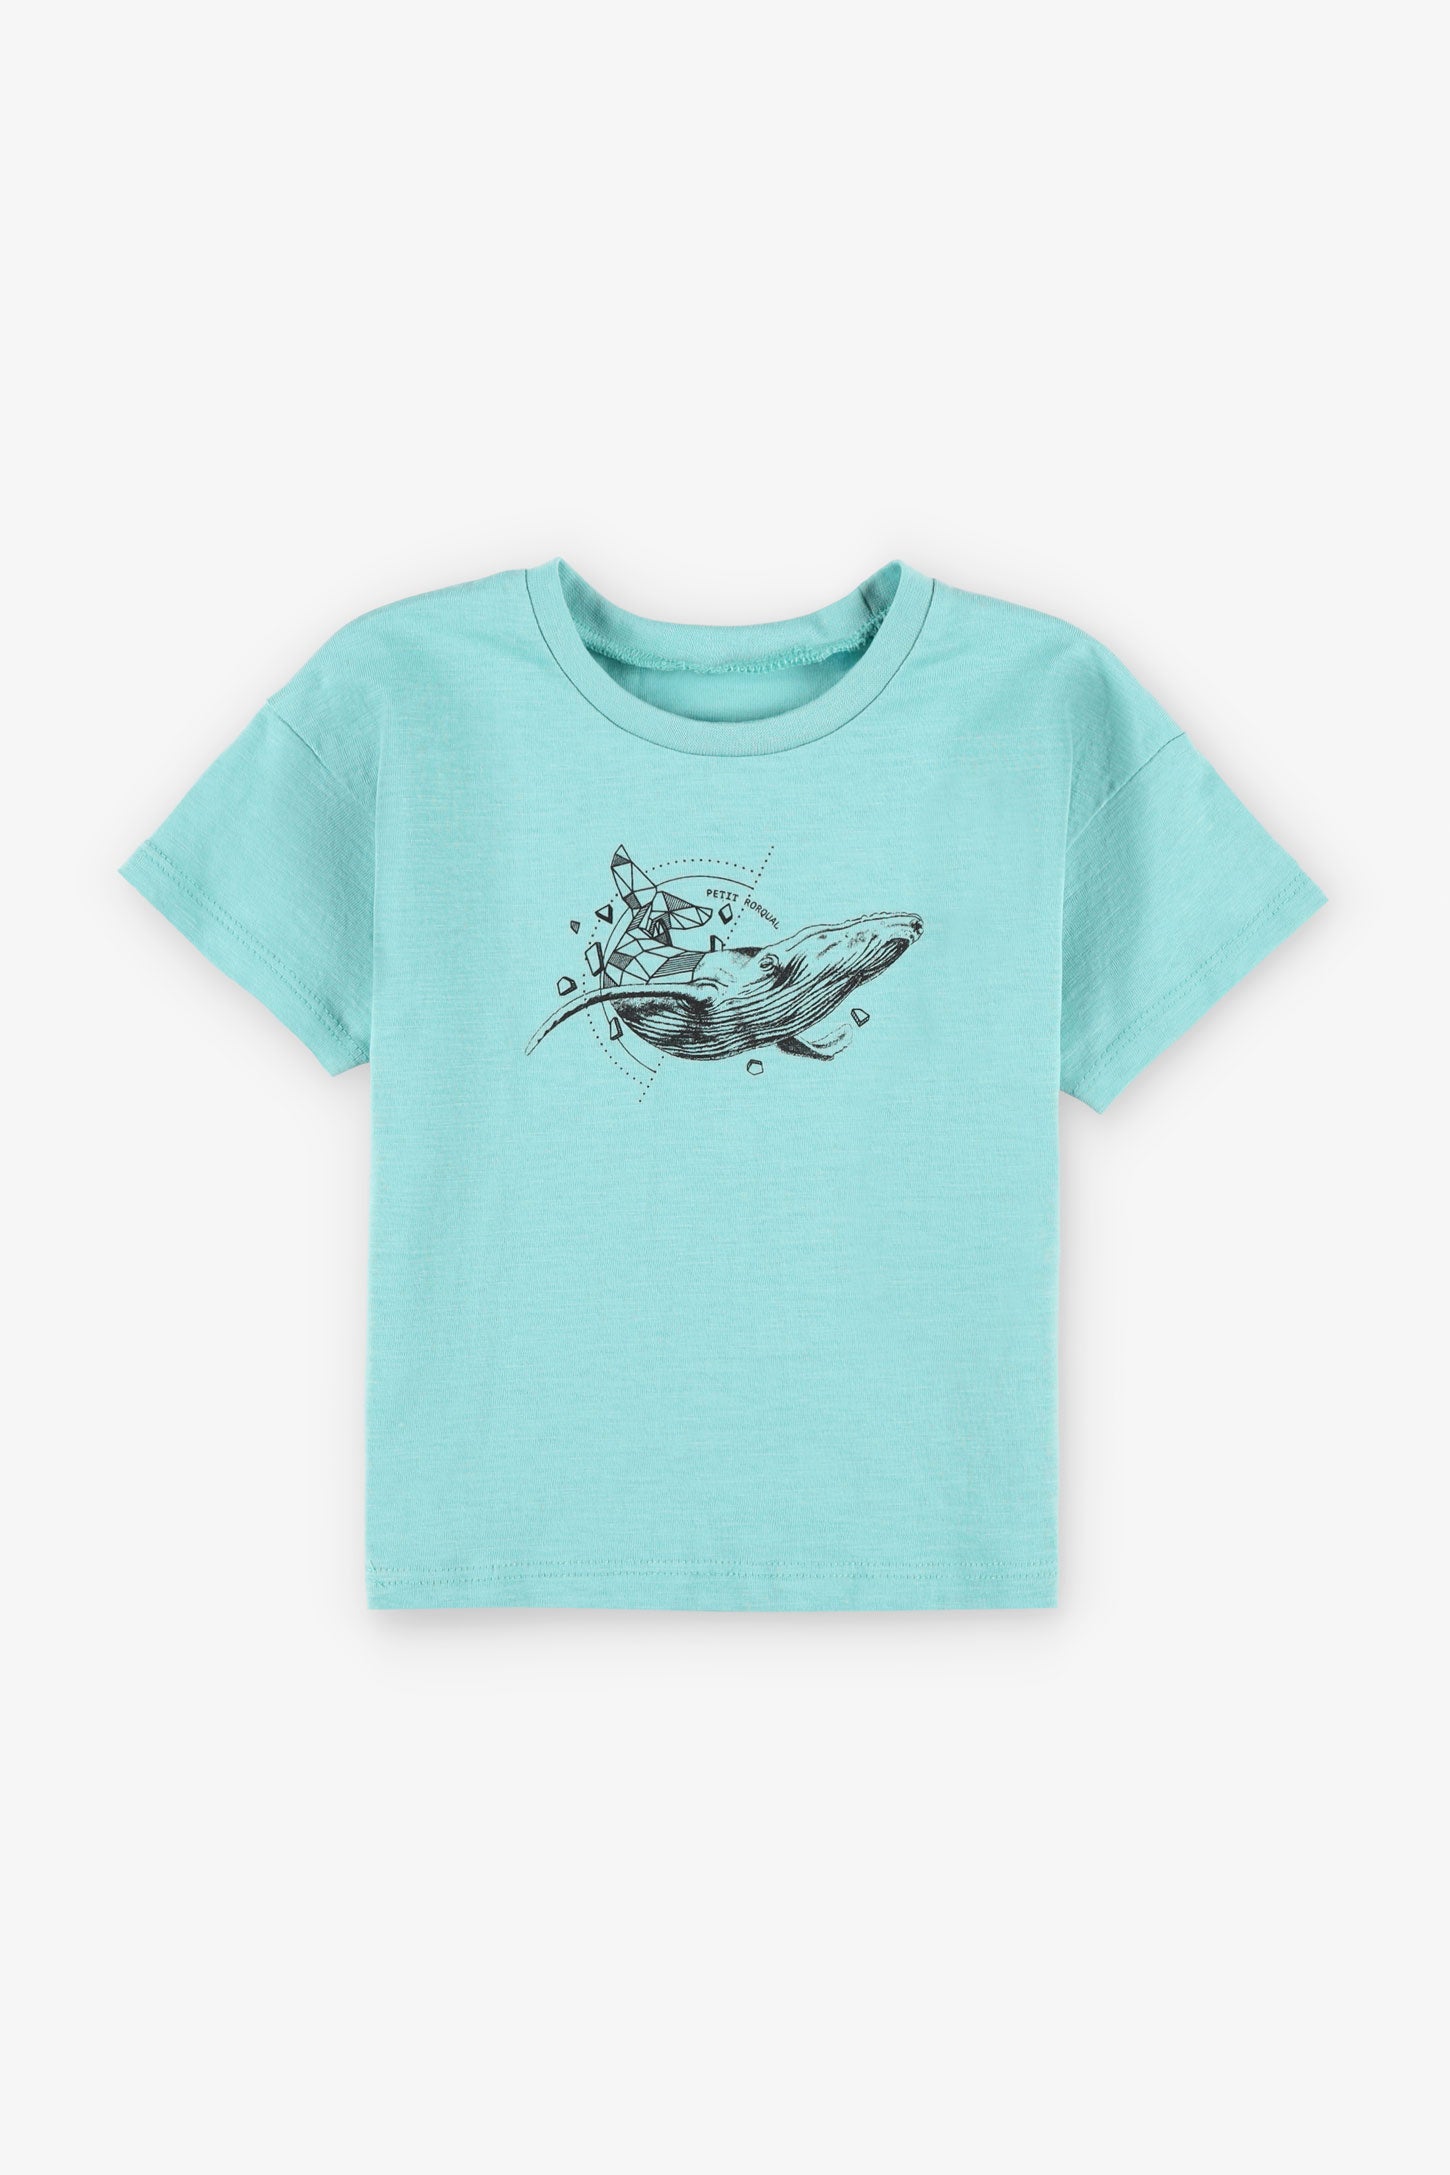 T-shirt coupe ample en coton, 2T-3T, 2/15$ - Bébé garçon && TURQUOISE